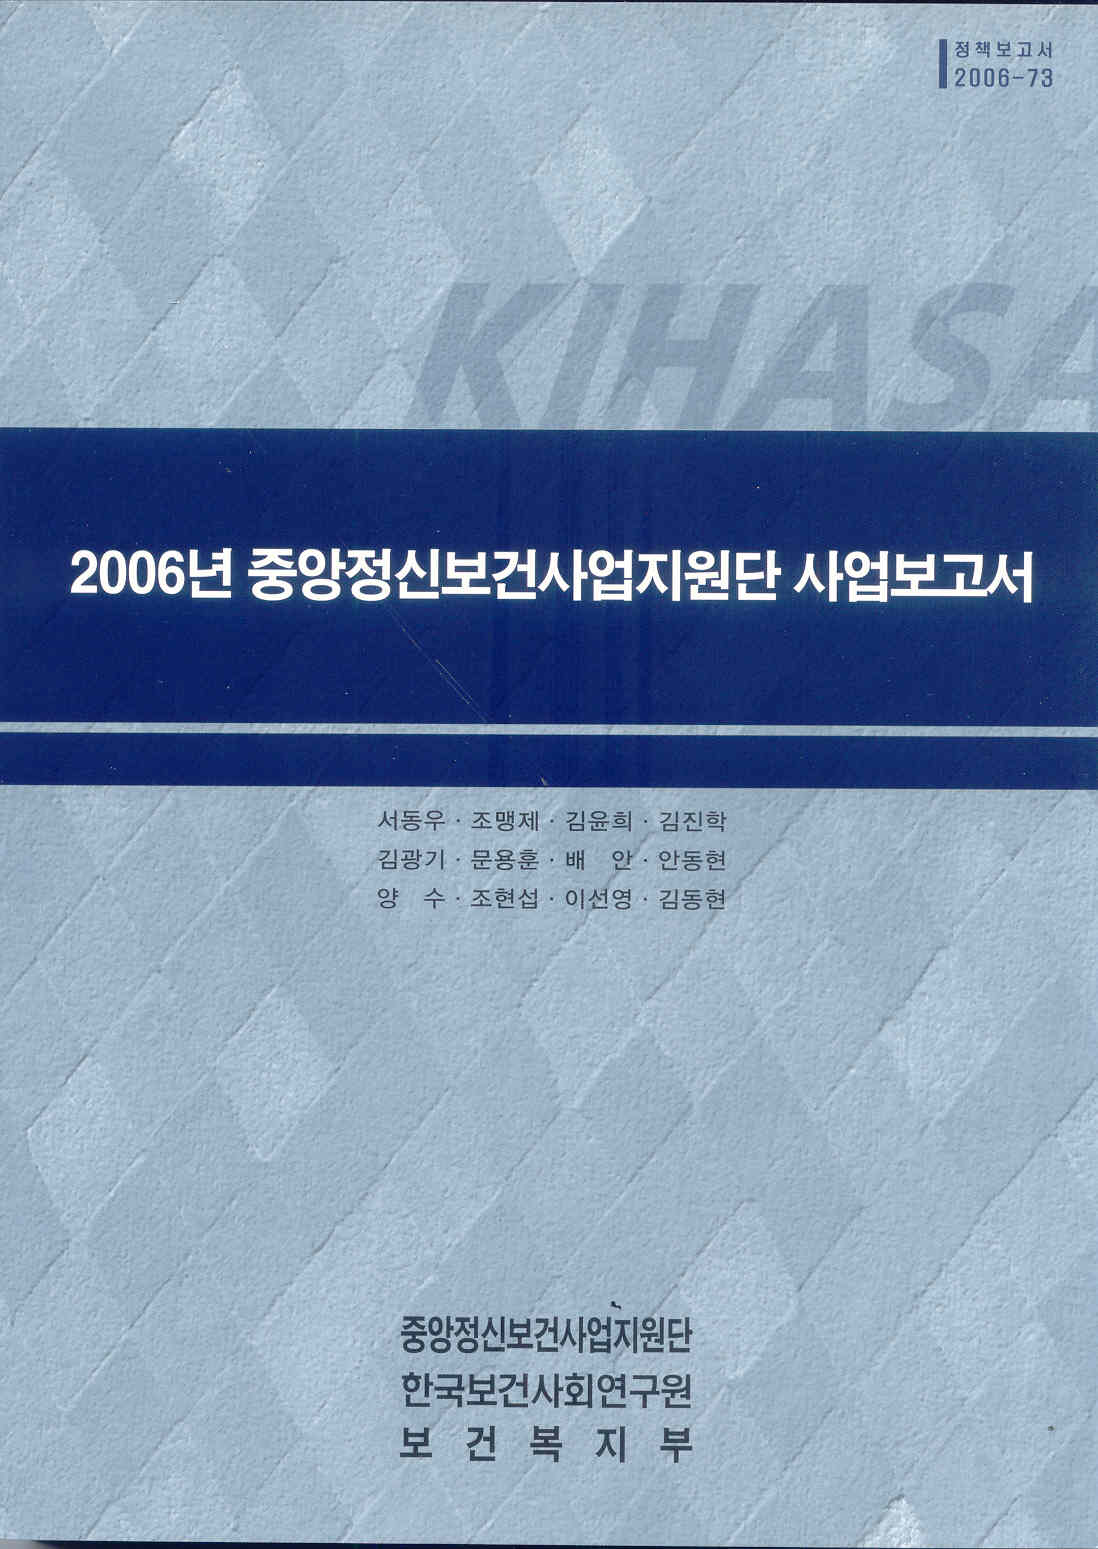 2006년 중앙정신보건사업지원단 사업보고서